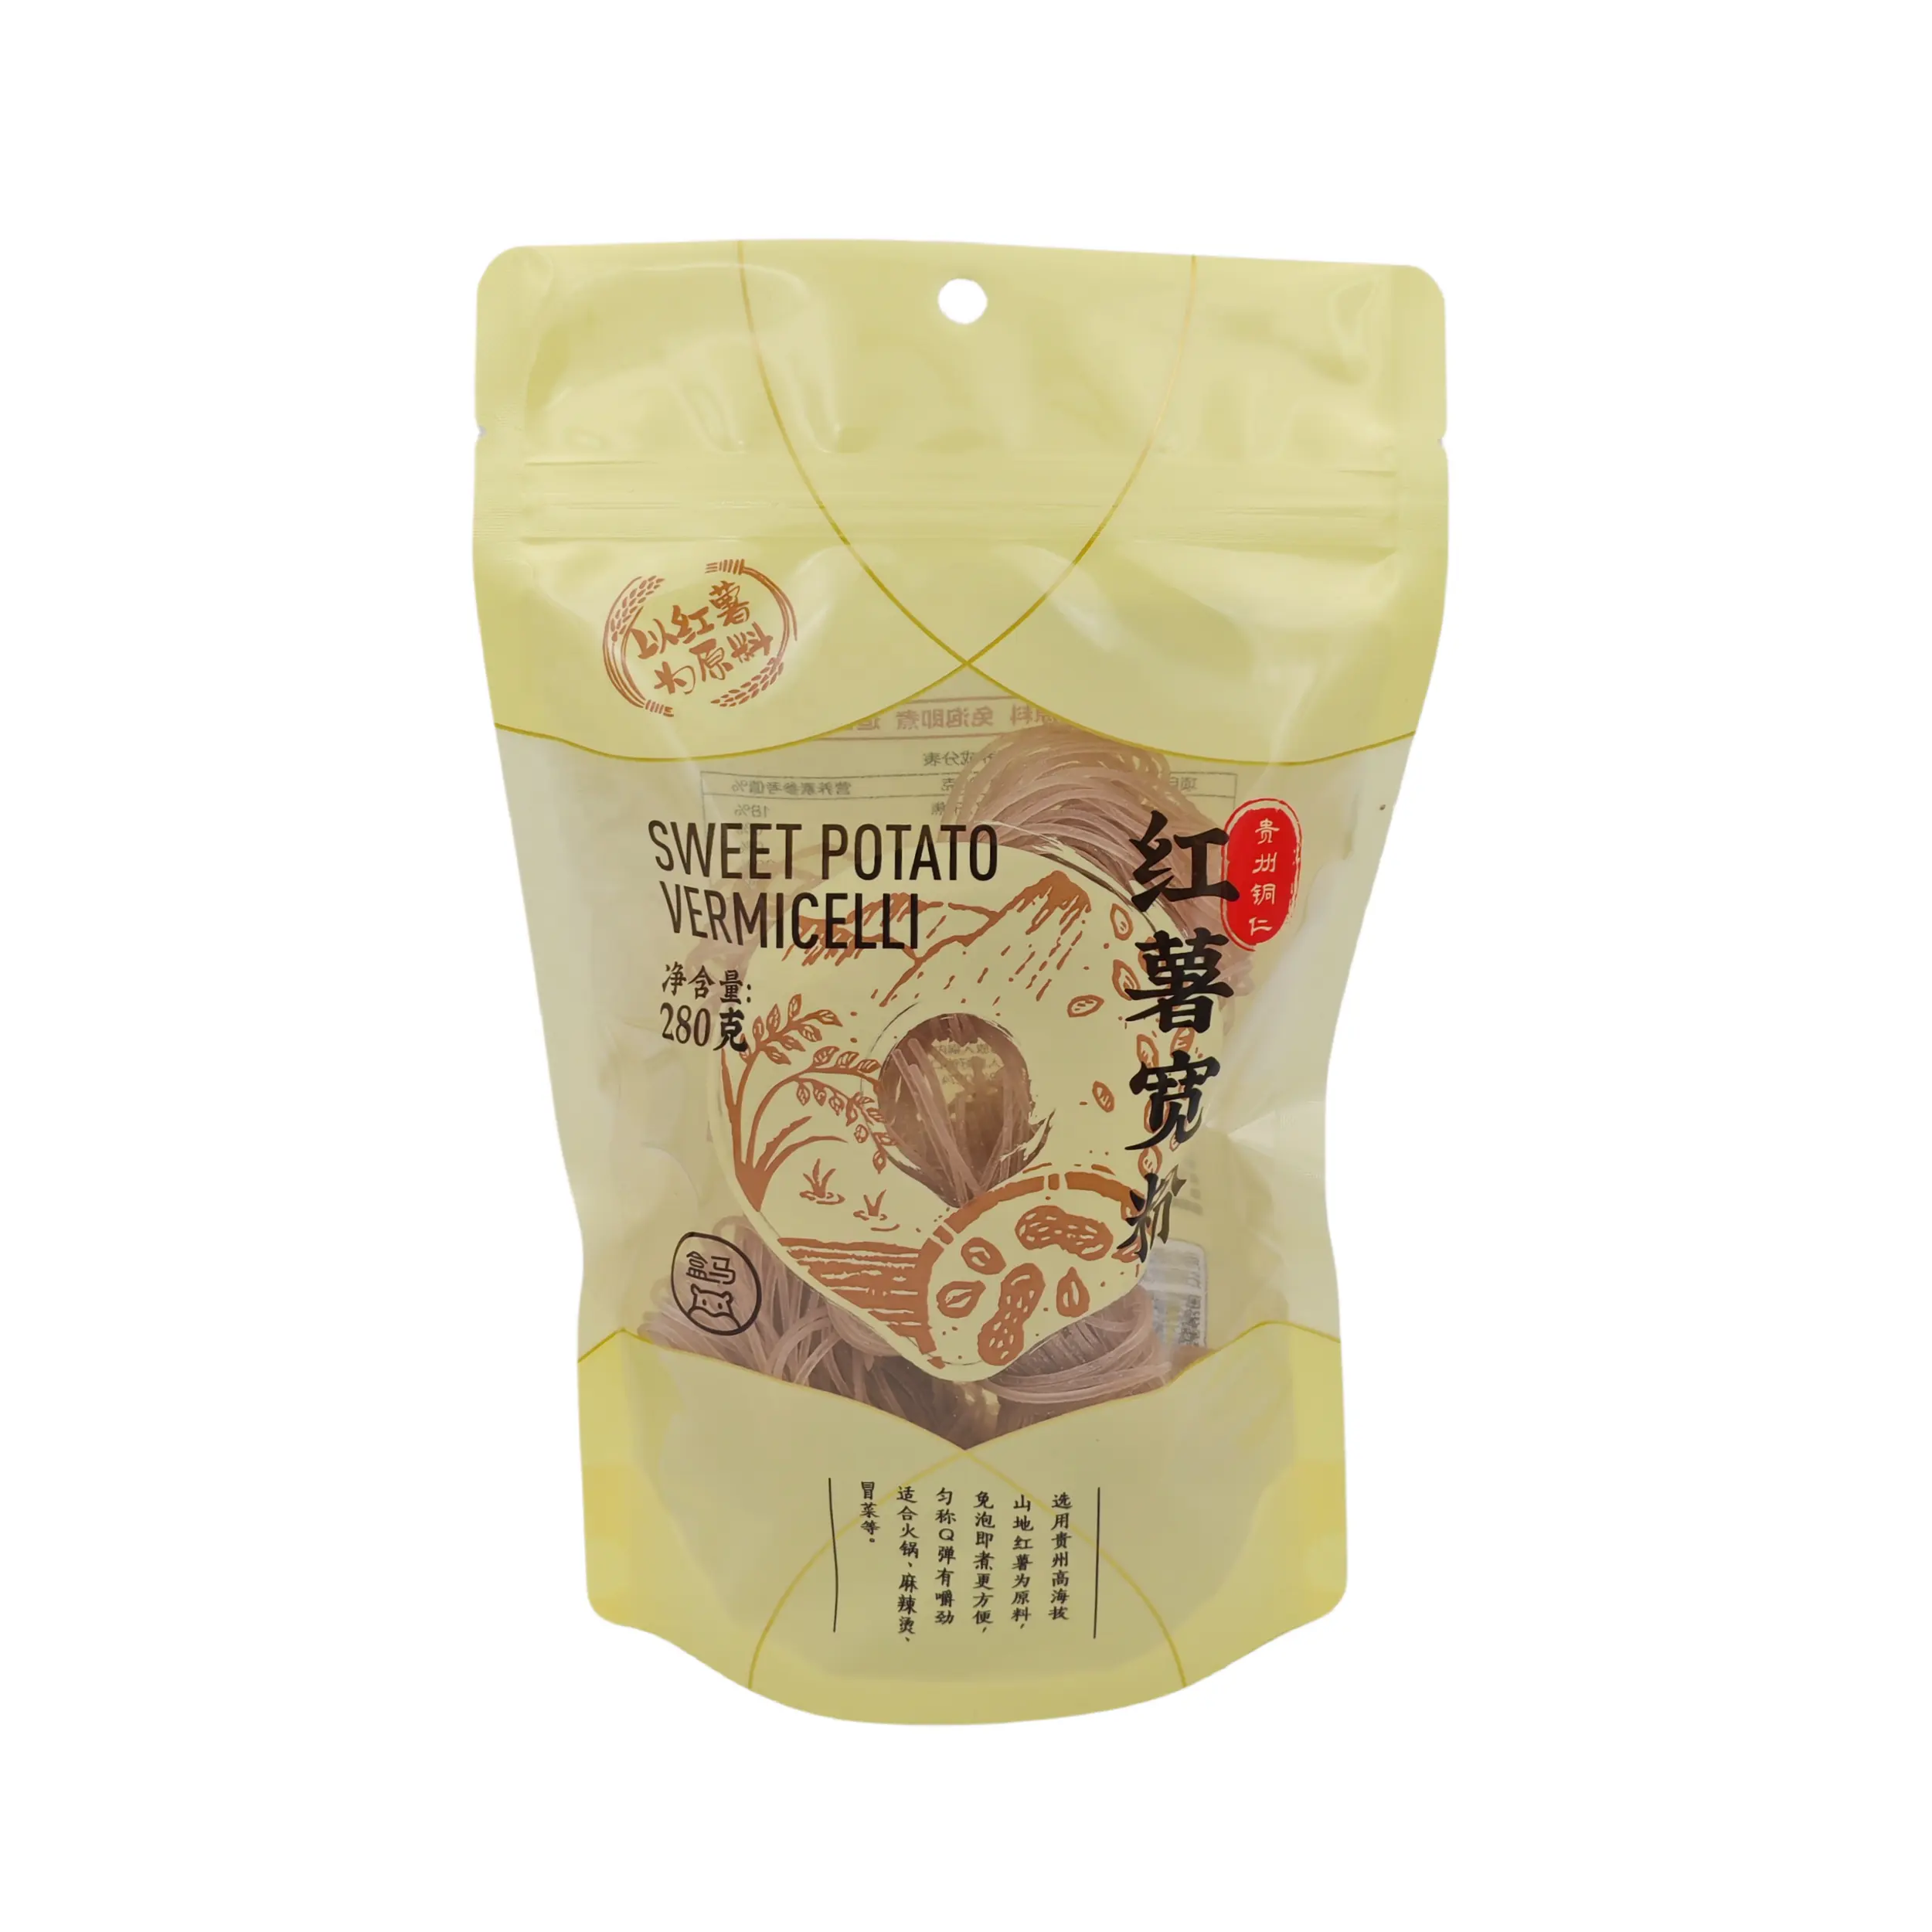 Sac d'emballage en plastique alimentaire haut de gamme personnalisé vermicelles de patate douce pochette debout à fermeture éclair sac ziplock laminé souple et résistant